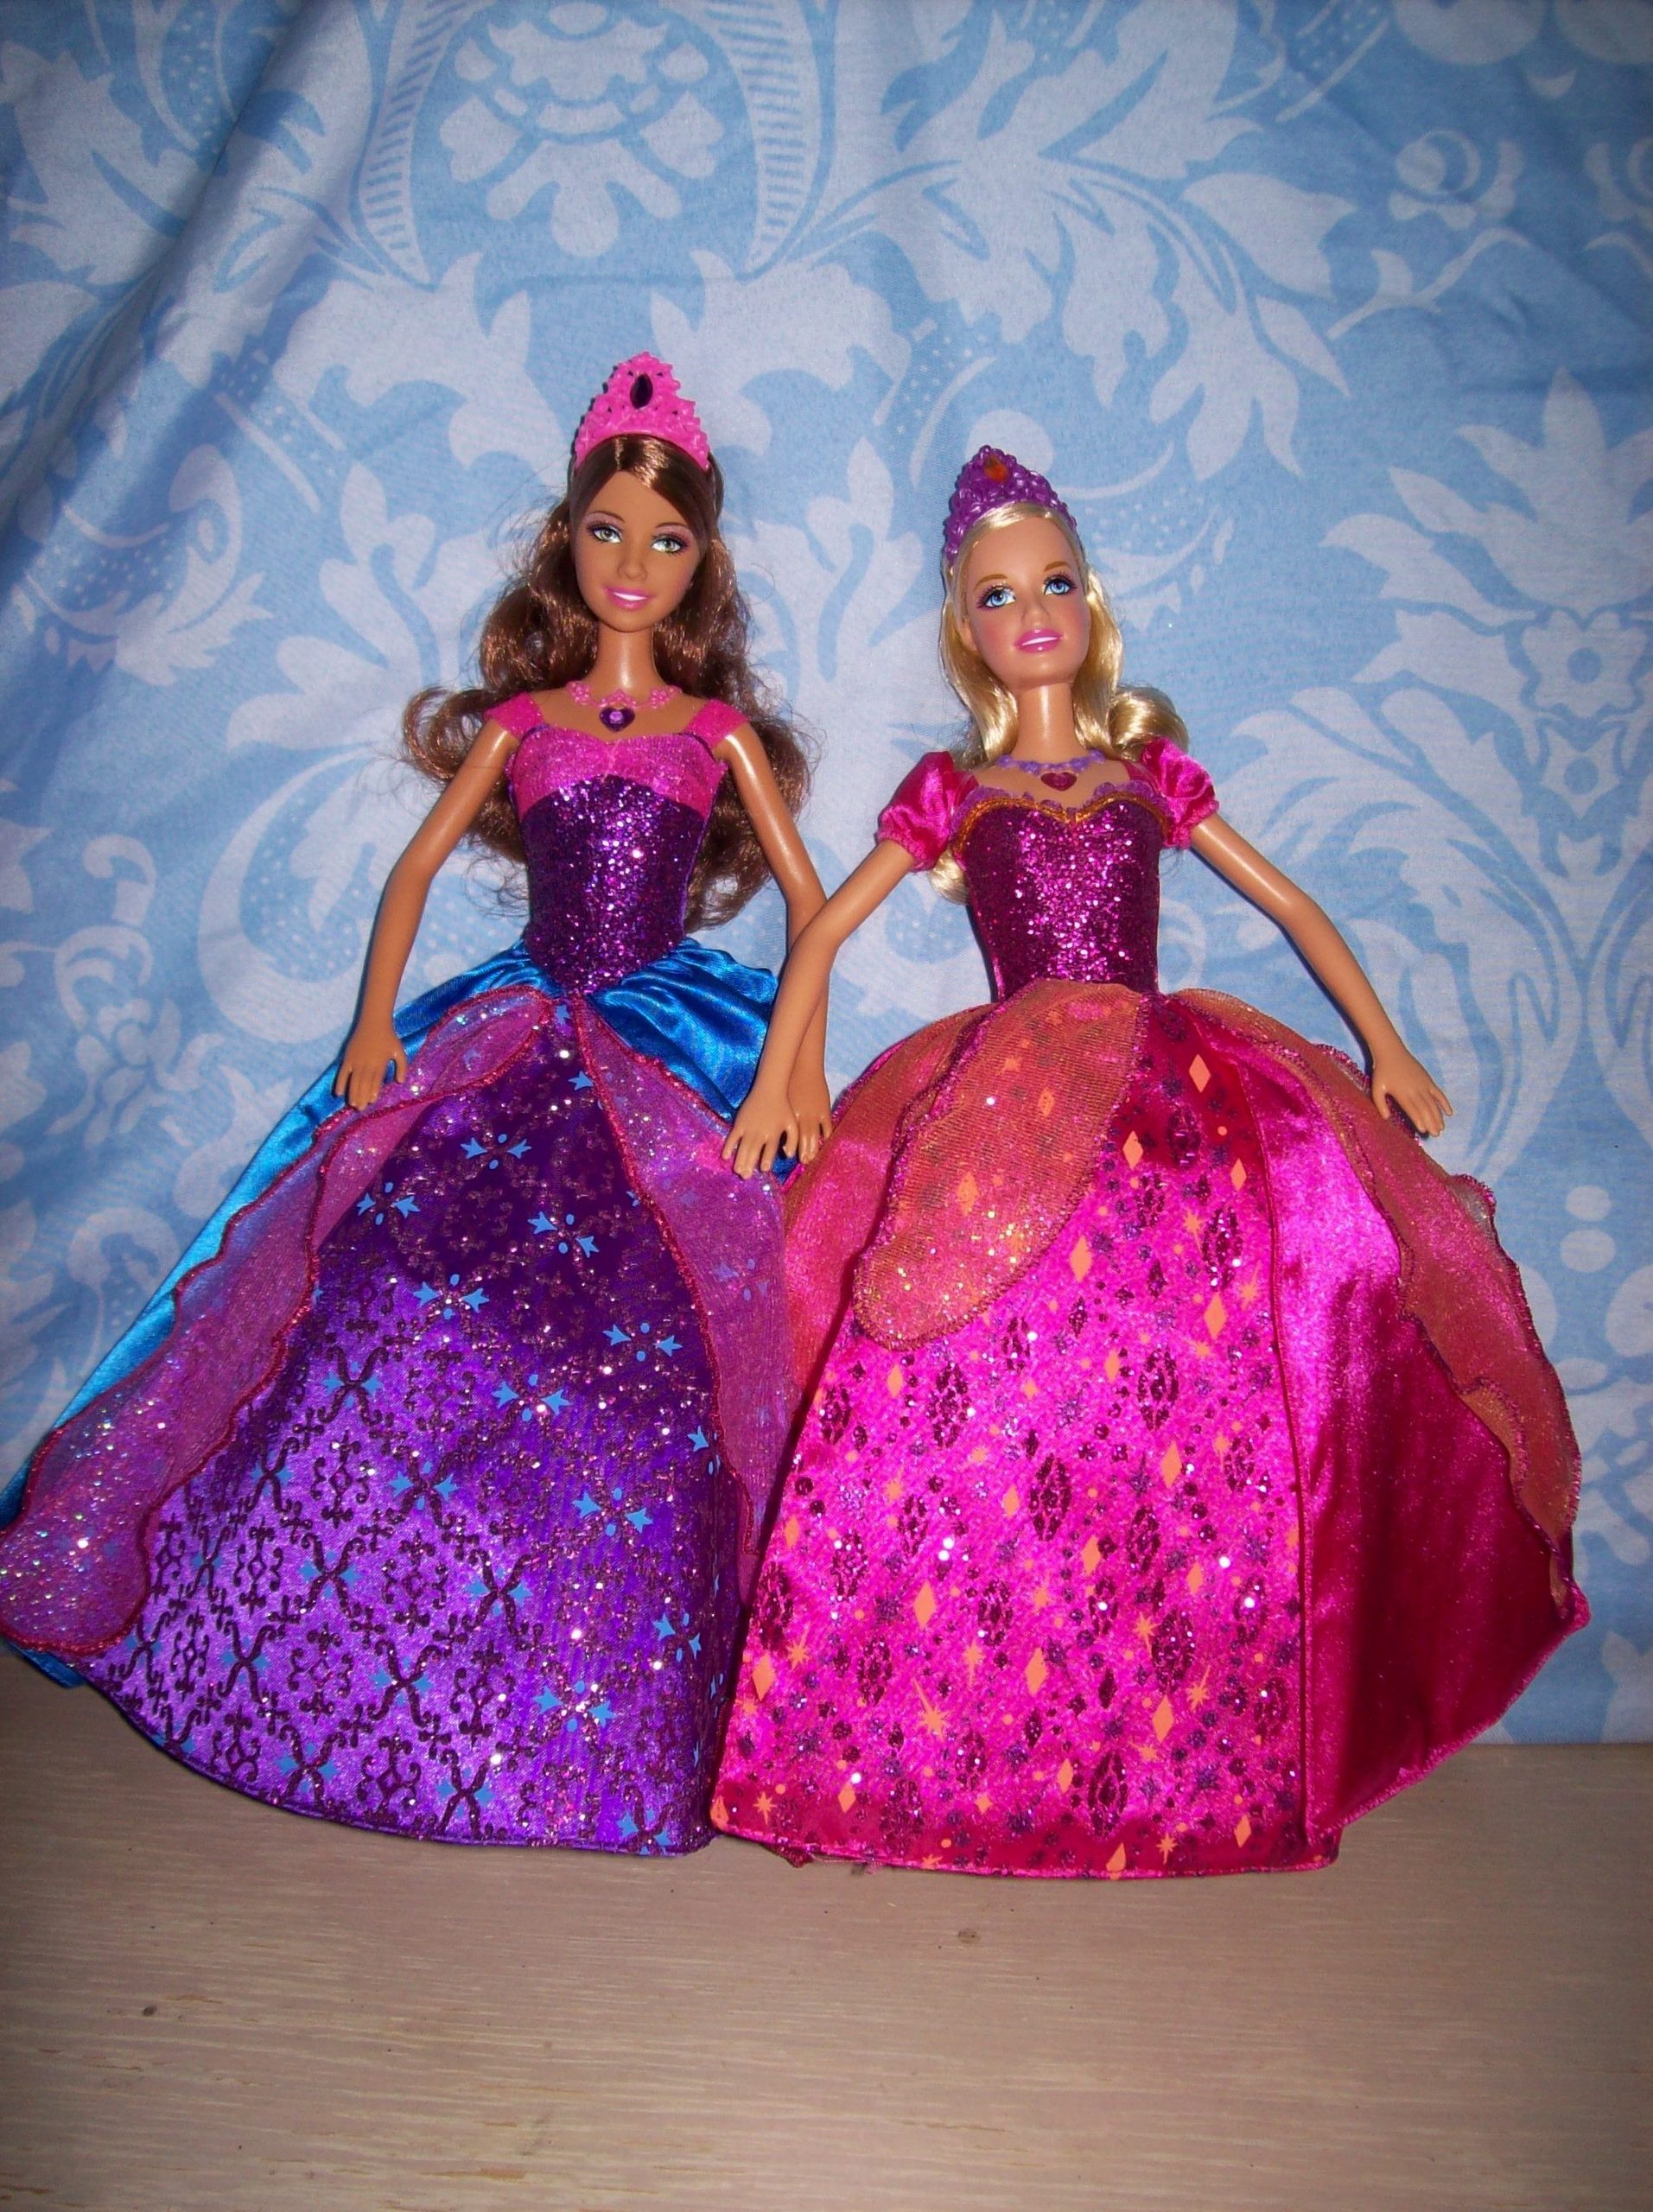 Barbie in the diamond castle - Barbie Collectors Photo (5206056) - Fanpop